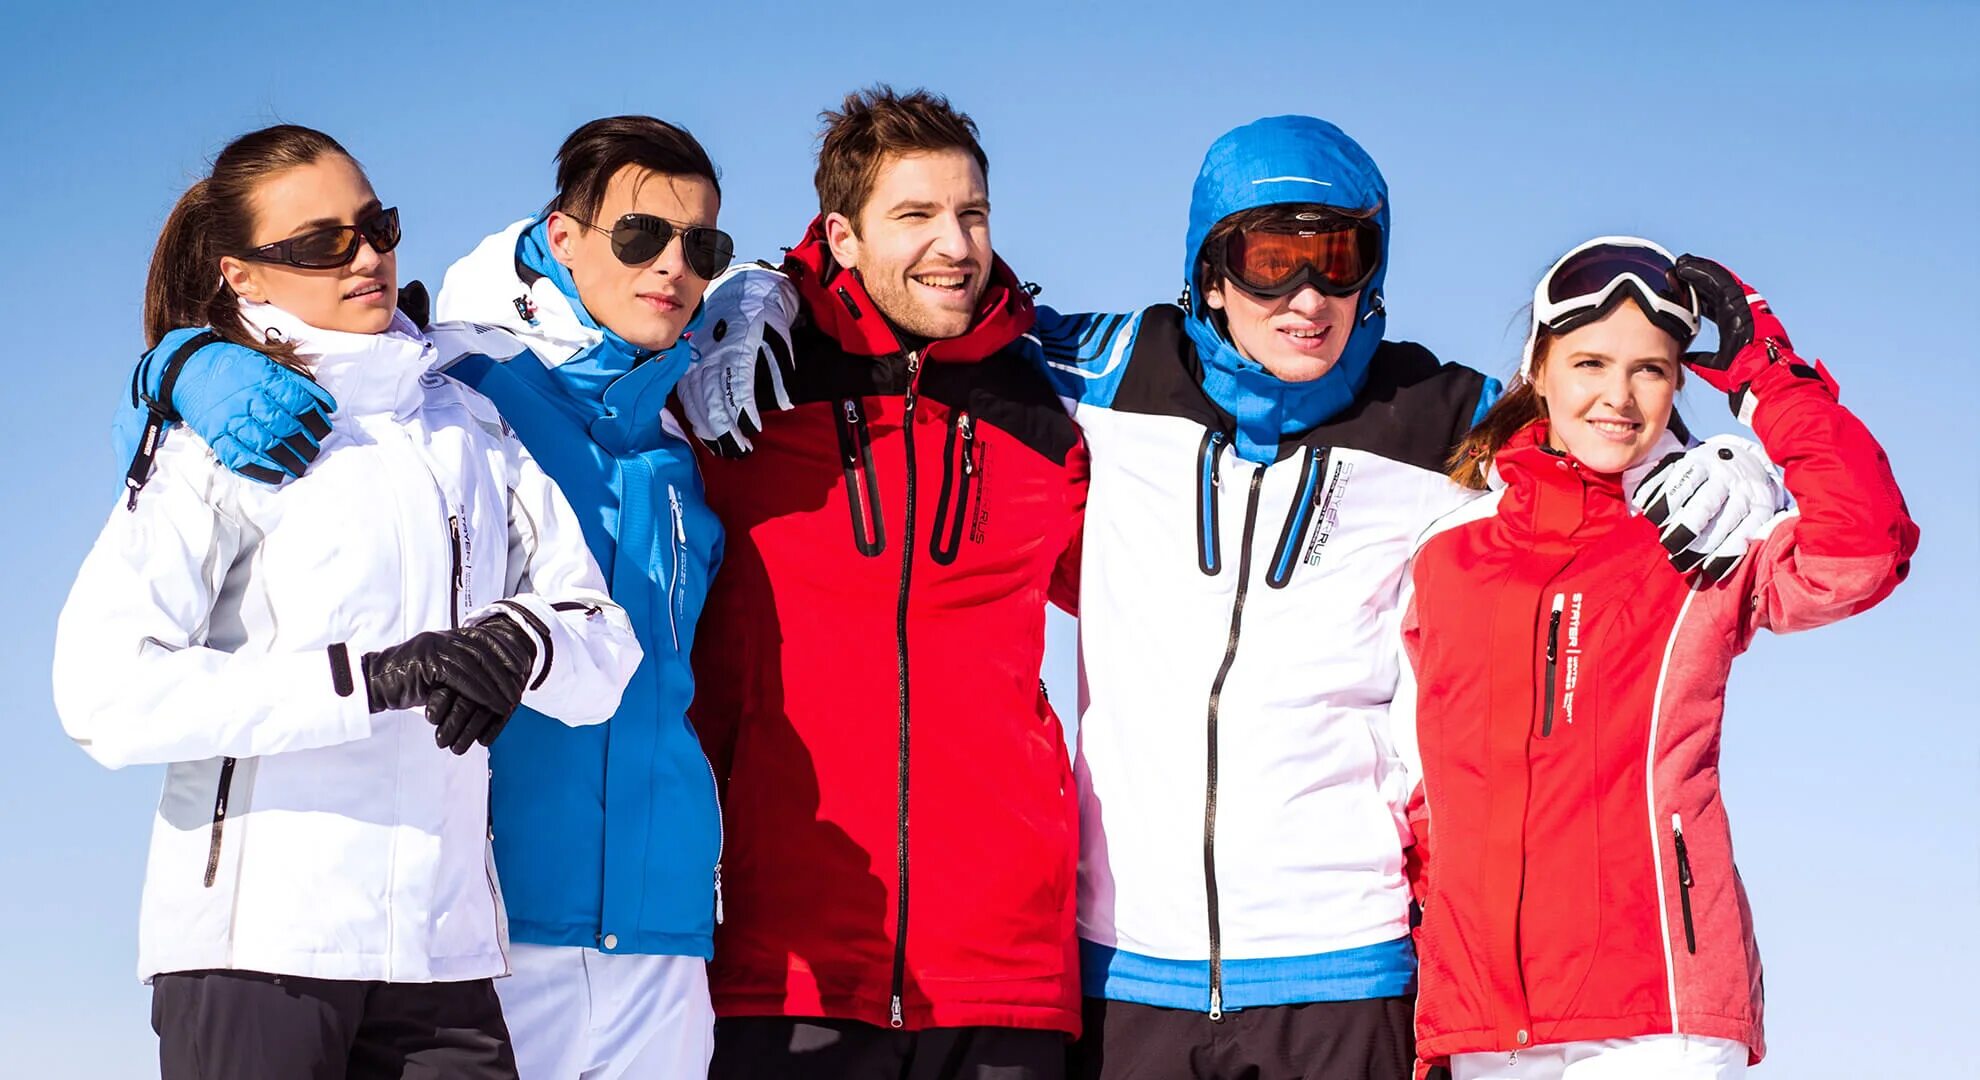 Прояви одежда. Спортивная одежда. Зимняя одежда. Одежда для горнолыжного спорта. Зимняя одежда для спорта.